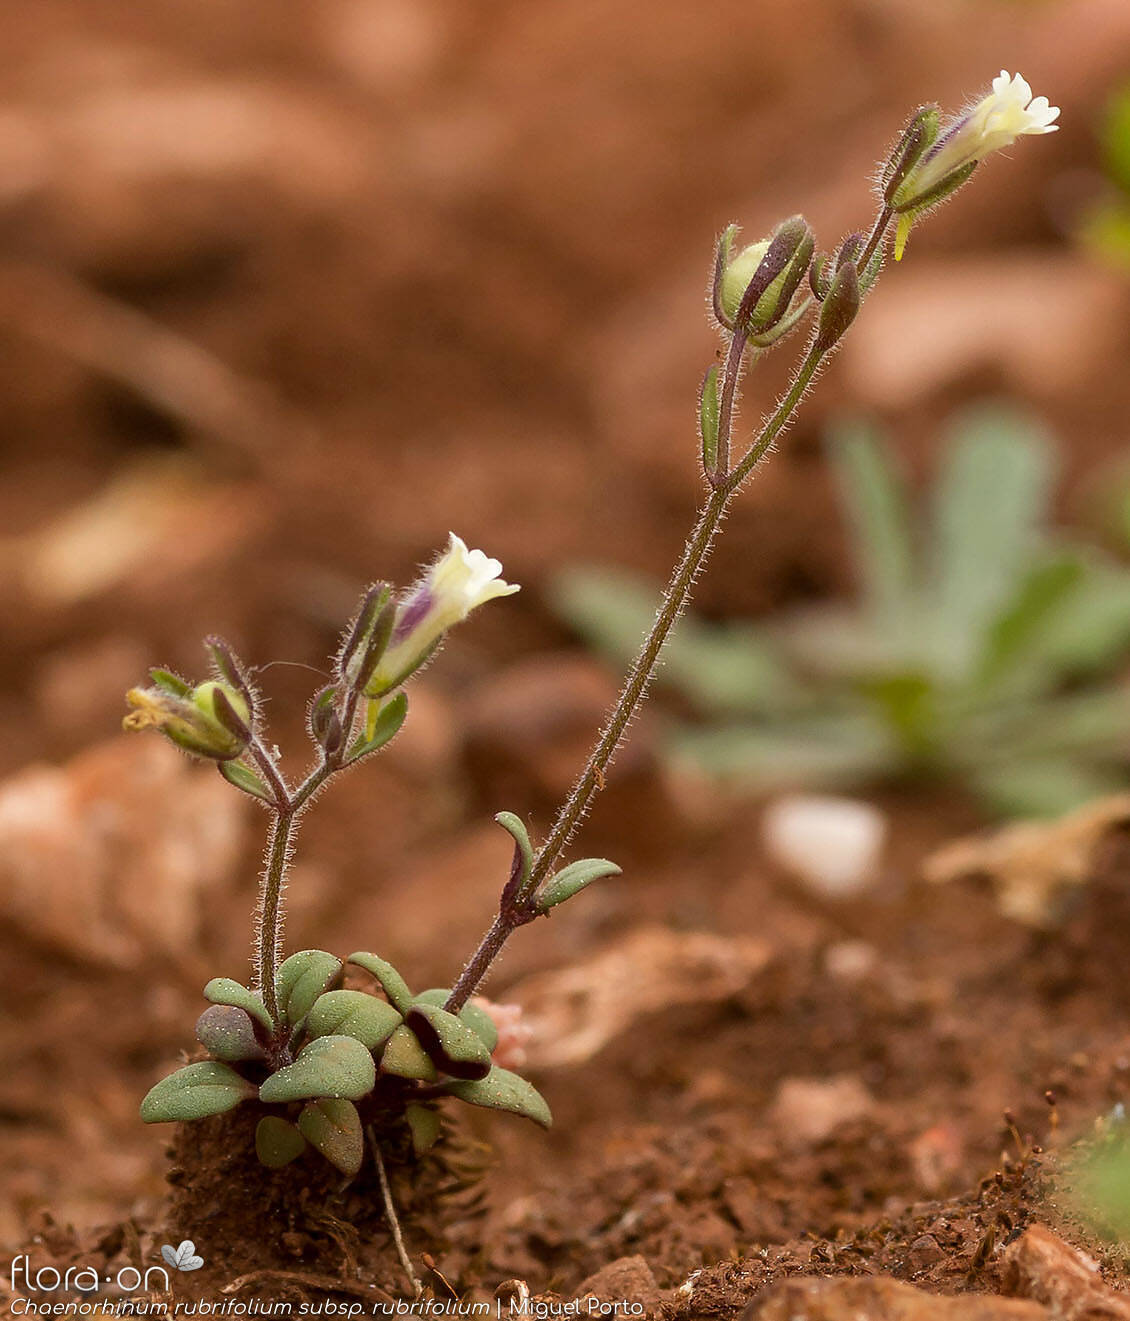 Chaenorhinum rubrifolium rubrifolium - Hábito | Miguel Porto; CC BY-NC 4.0